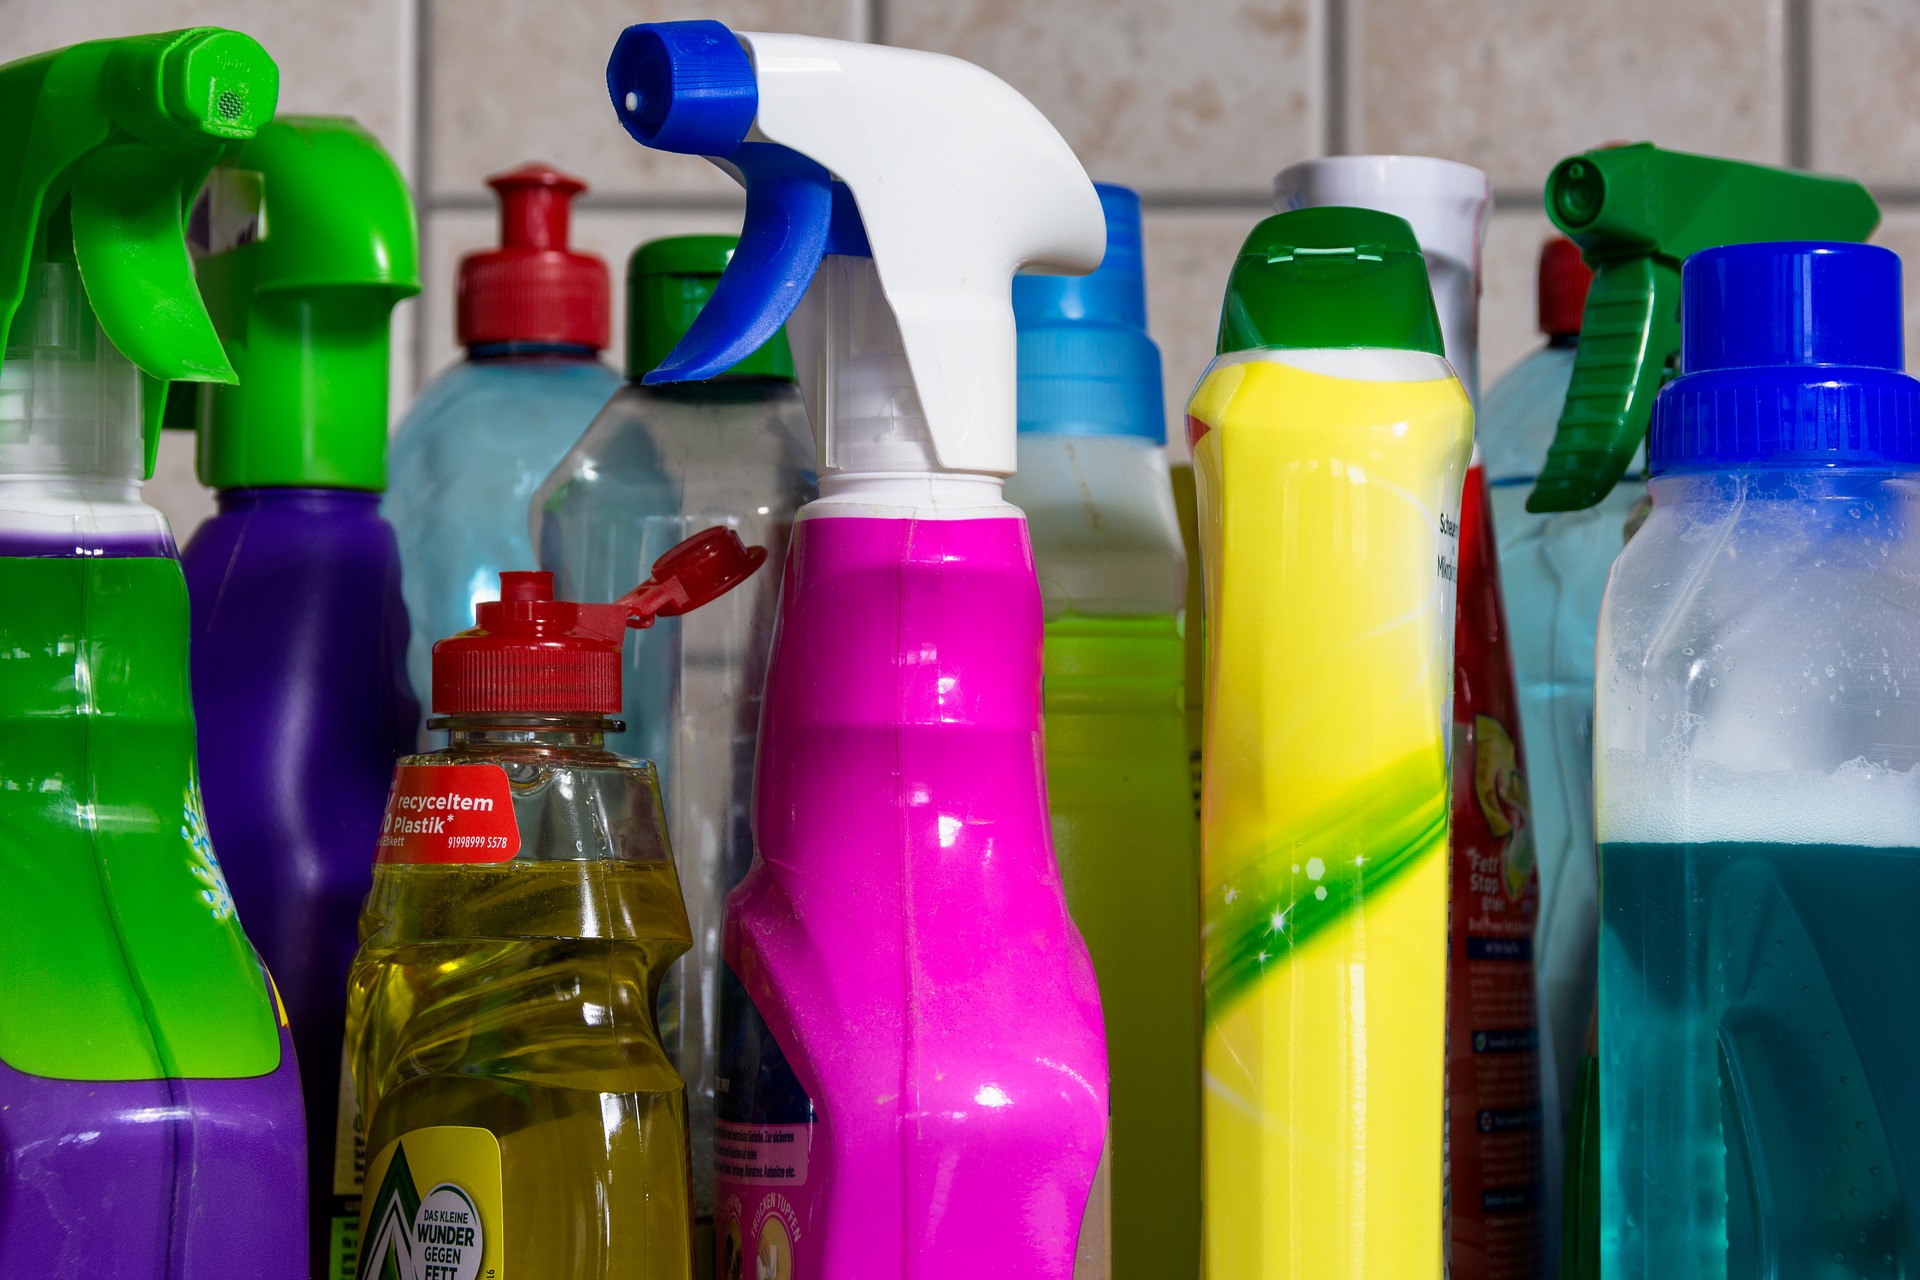 Reforma Tributária prevê desconto em produtos de higiene pessoal e limpeza para famílias de baixa renda